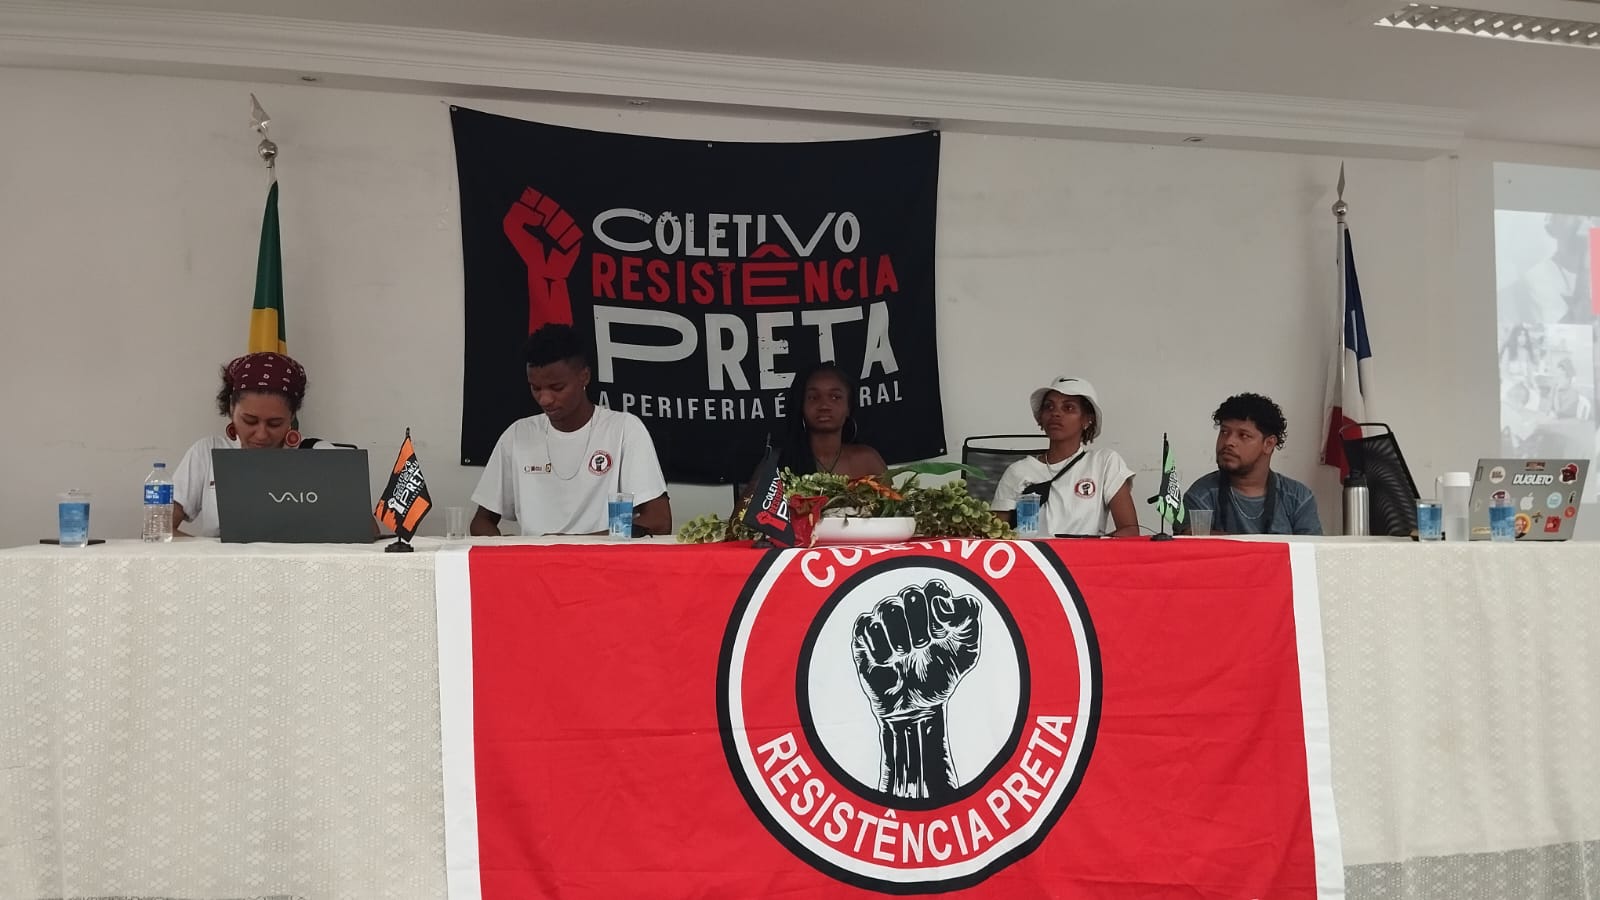 Periferia é central: Coletivo Resistência Preta e políticas públicas em Salvador